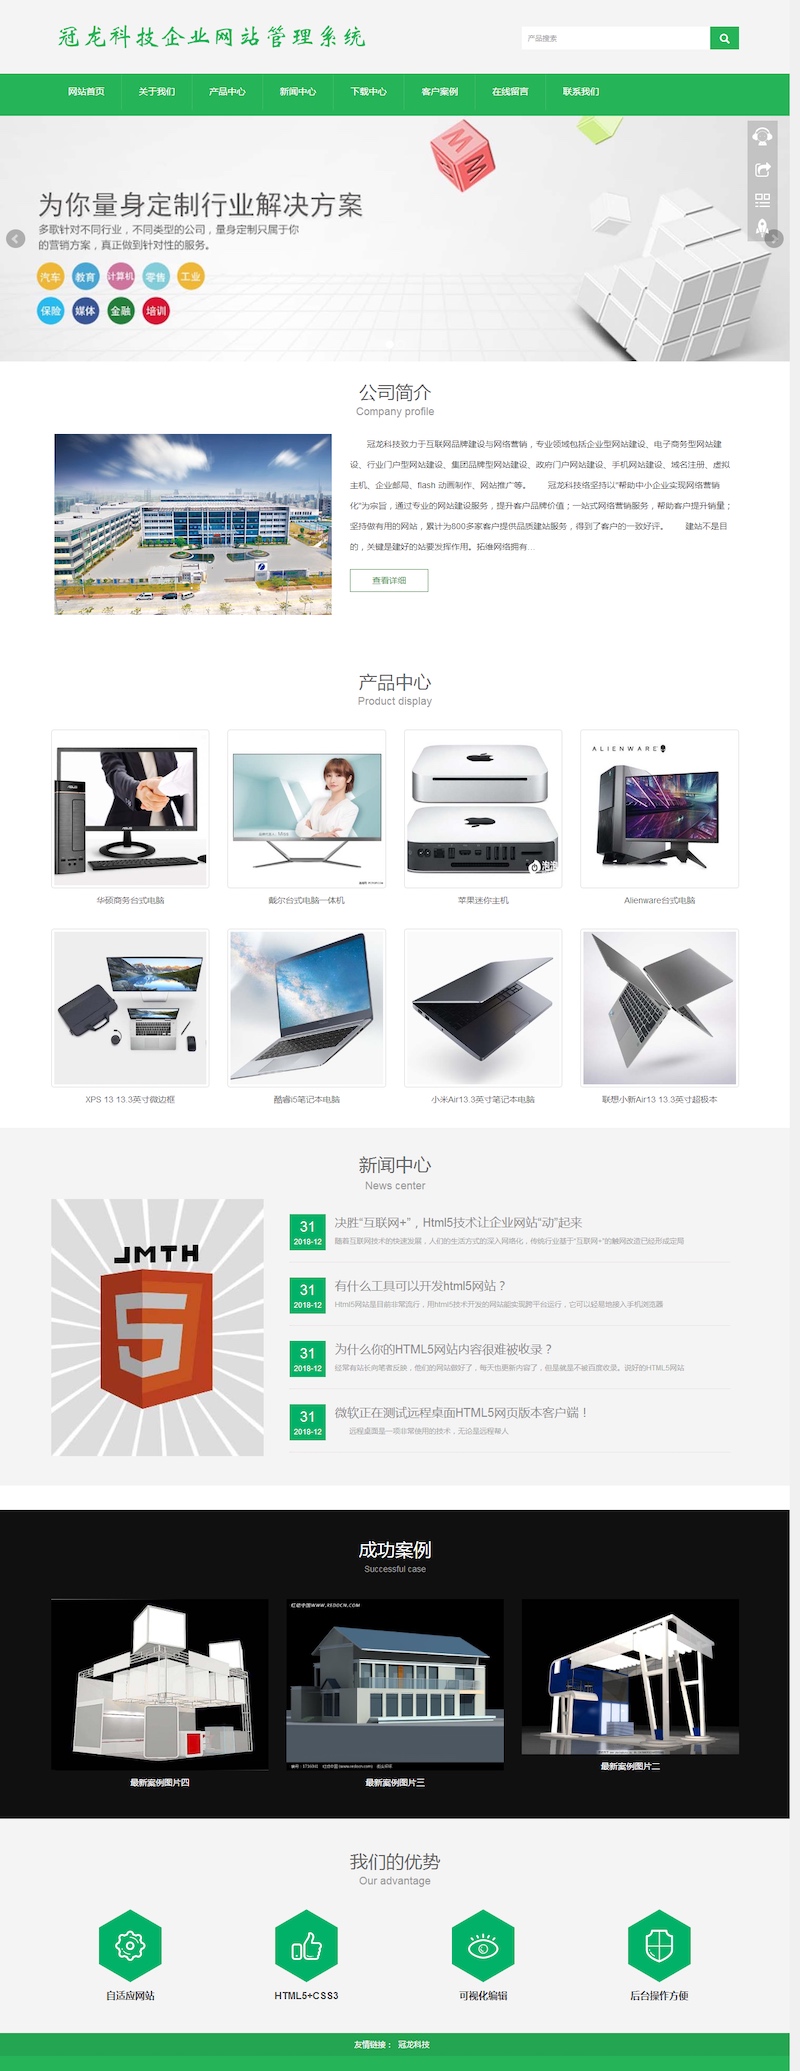 【首发】冠龙科技企业网站管理系统V3.0